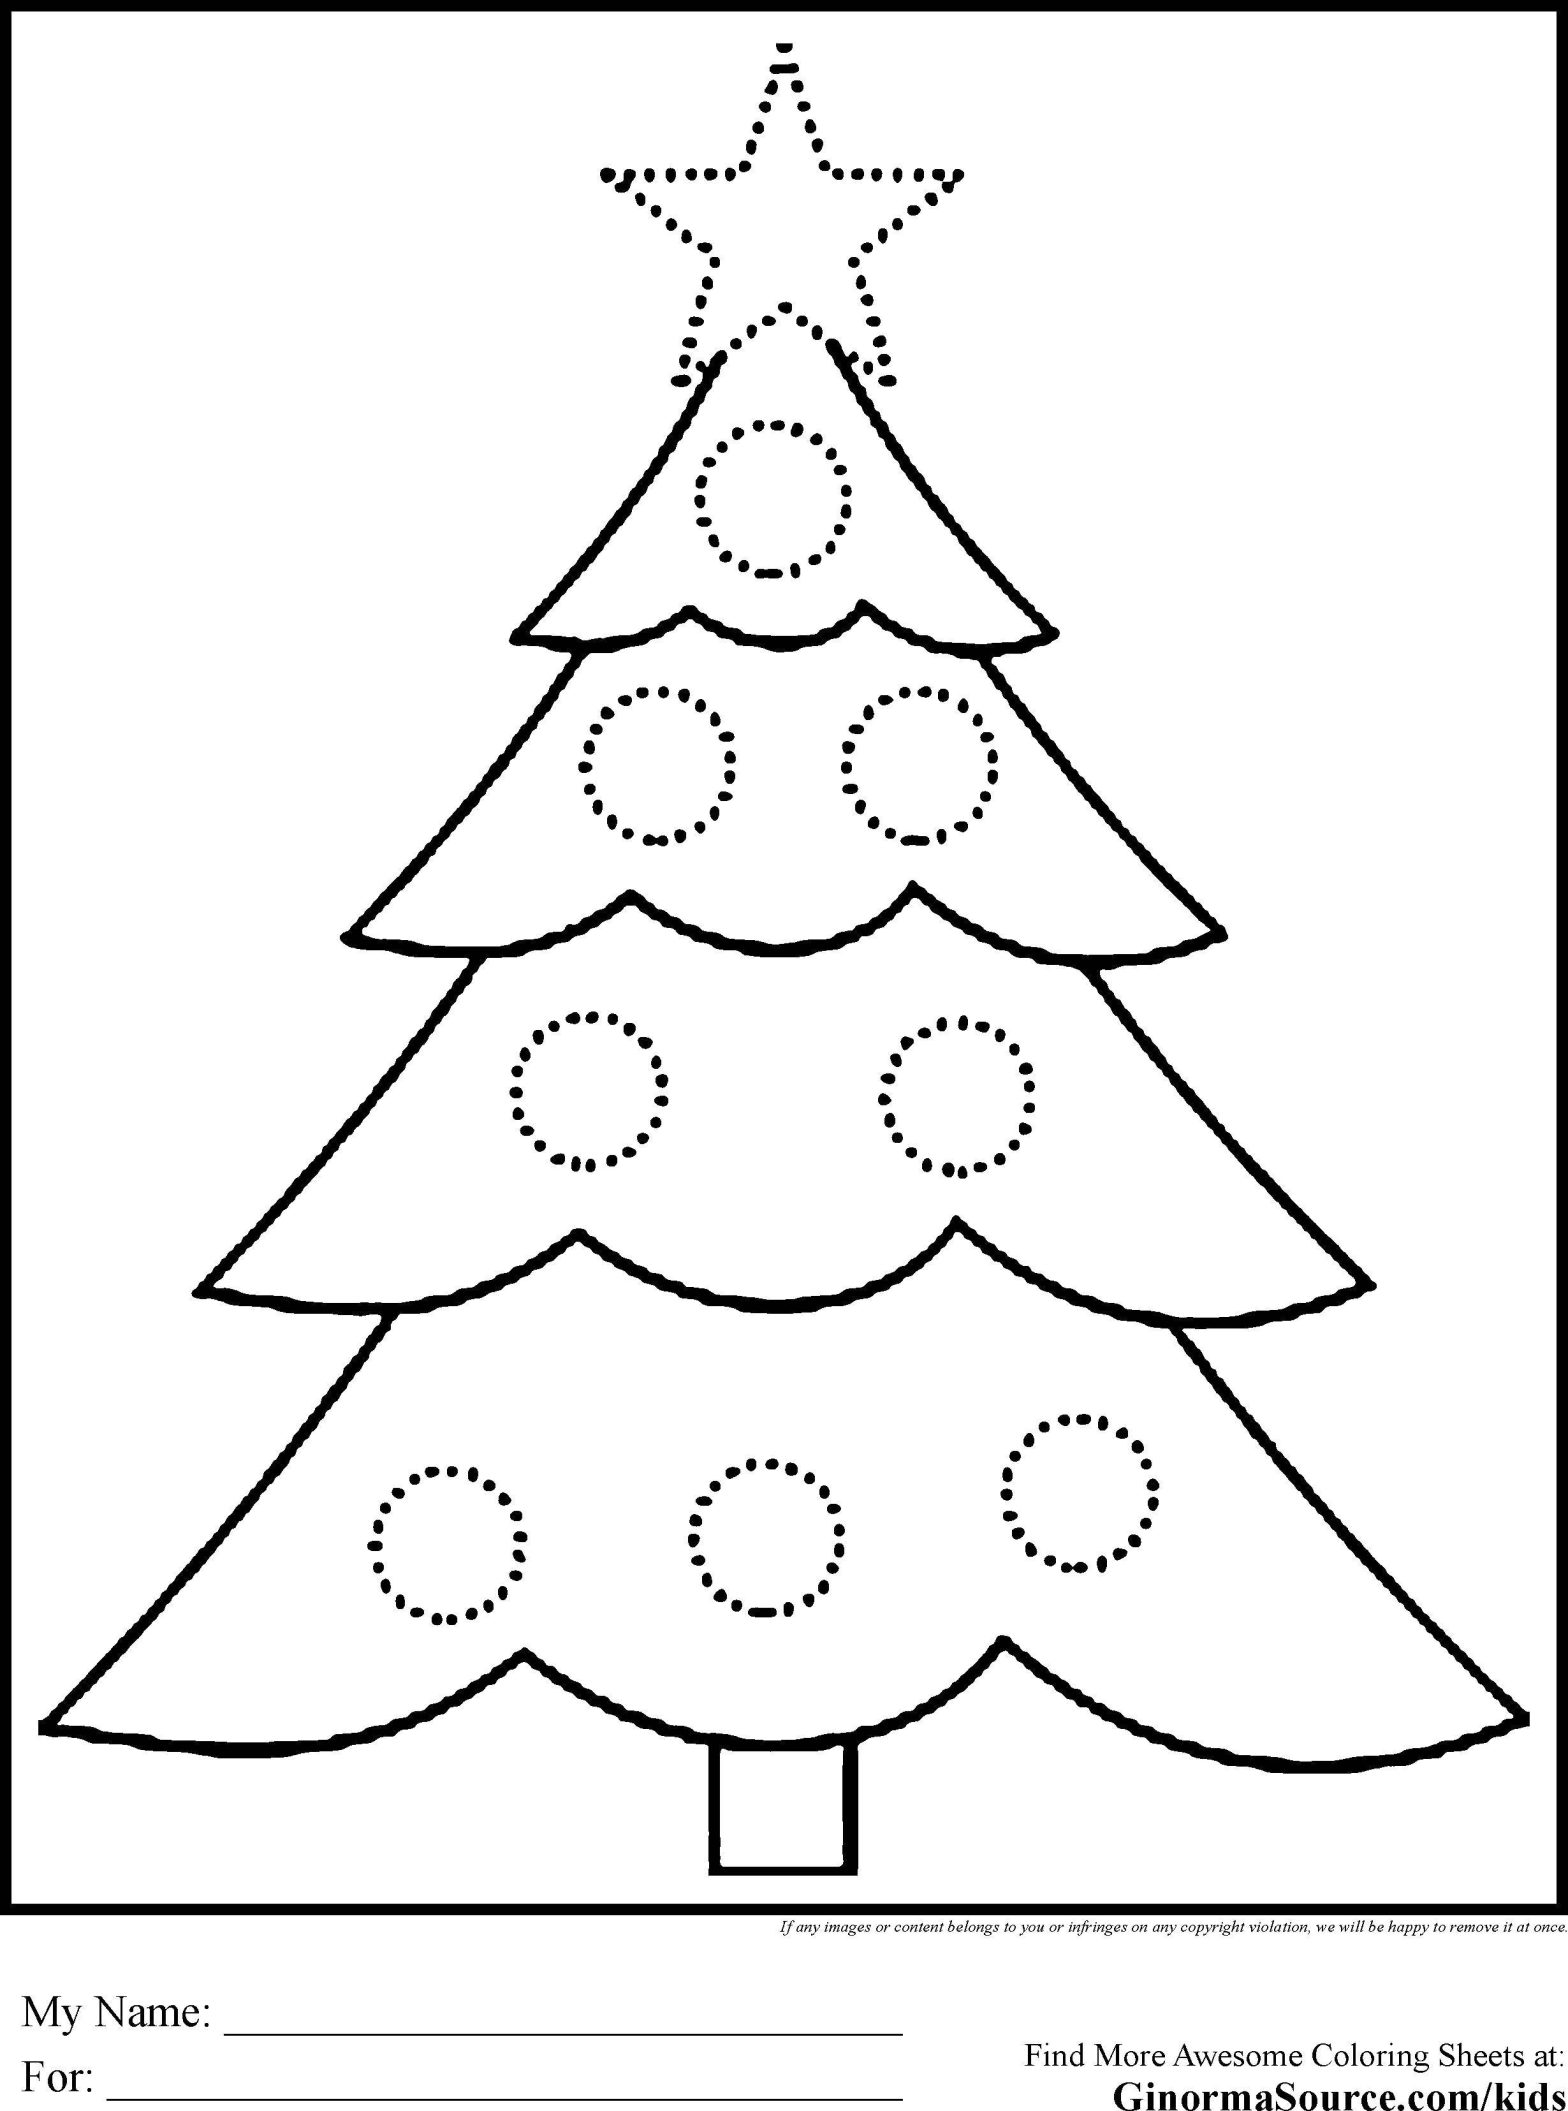 Раскраска рождество с елкой, игрушками и звездой (елка, игрушки, звезда)